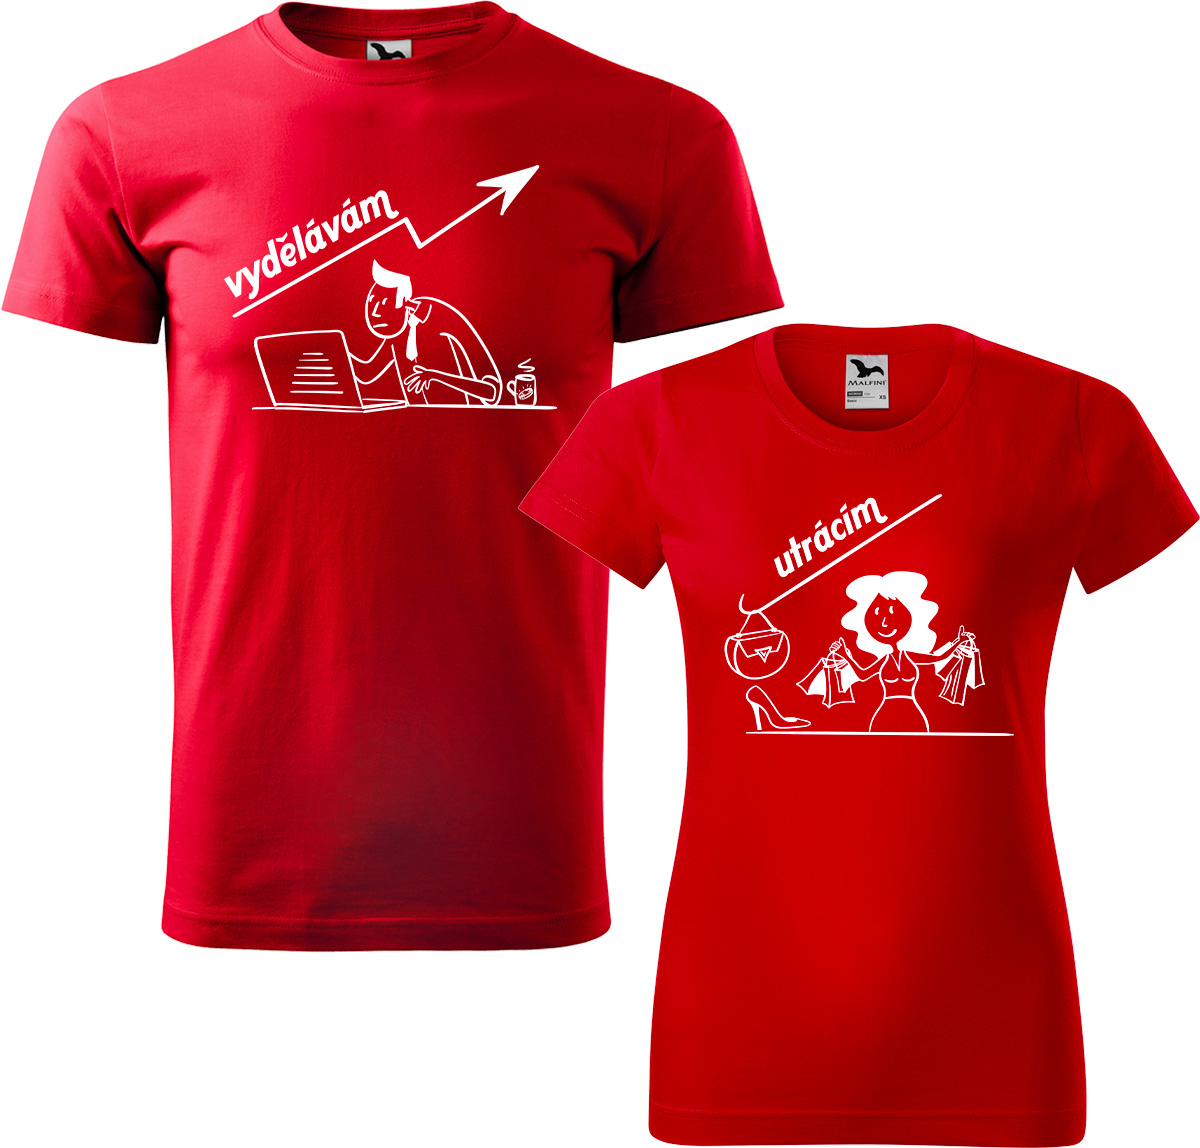 Trička pro páry - Vydělává, utrácí Barva: Červená (07), Velikost dámské tričko: S, Velikost pánské tričko: XL